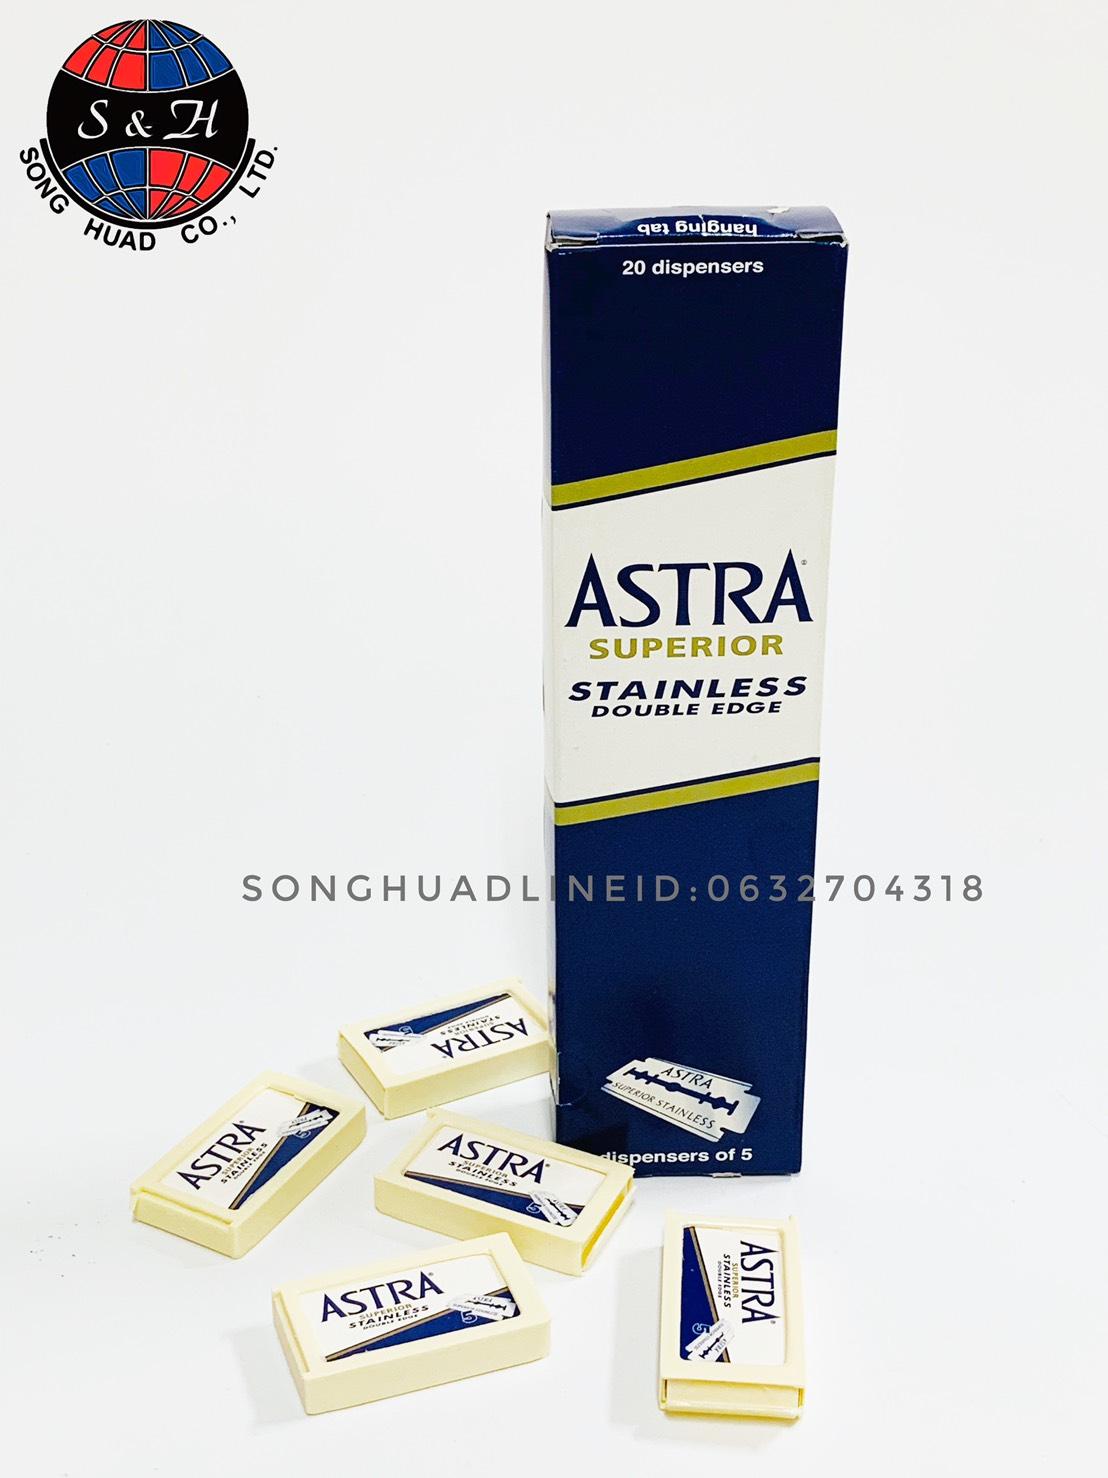 ASTRA ใบมีดโกนสแตนเลส ตราแอสตร้า ใบมีดโกนหนวด 2 คม 1 กล่อง (20 กล่องเล็ก รวม 100 ใบ) ใบมีดบางและคม สินค้าคุณภาพดี ของแท้นำเข้าจากประเทศรัสเซีย